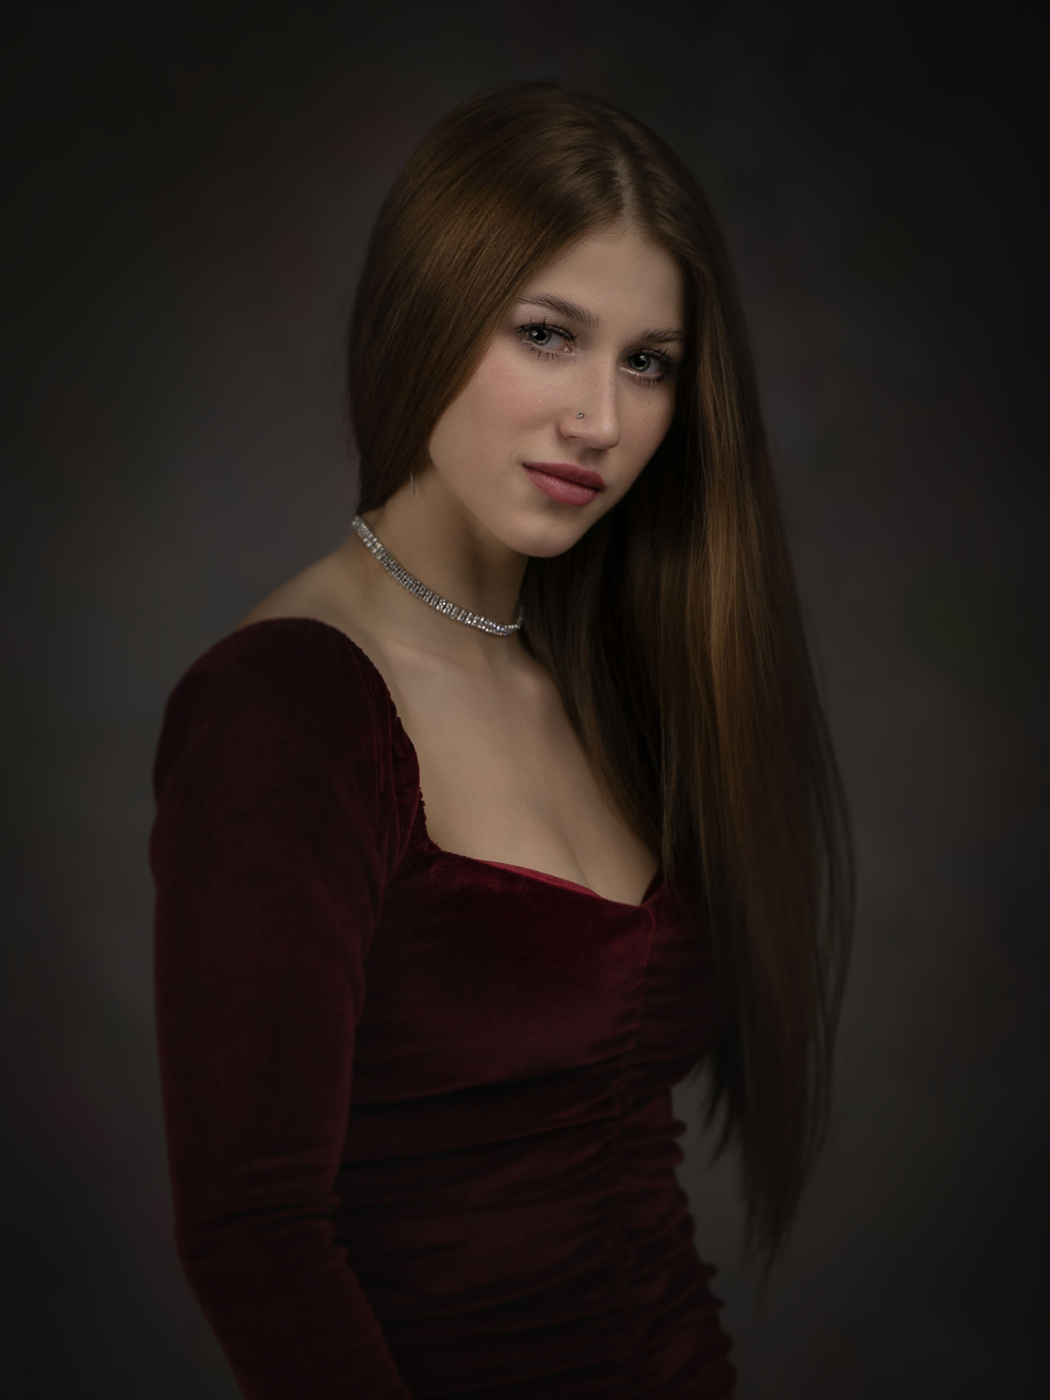 Евгения! Девушка портрет .красное платье гламур вспышка домашняя студия